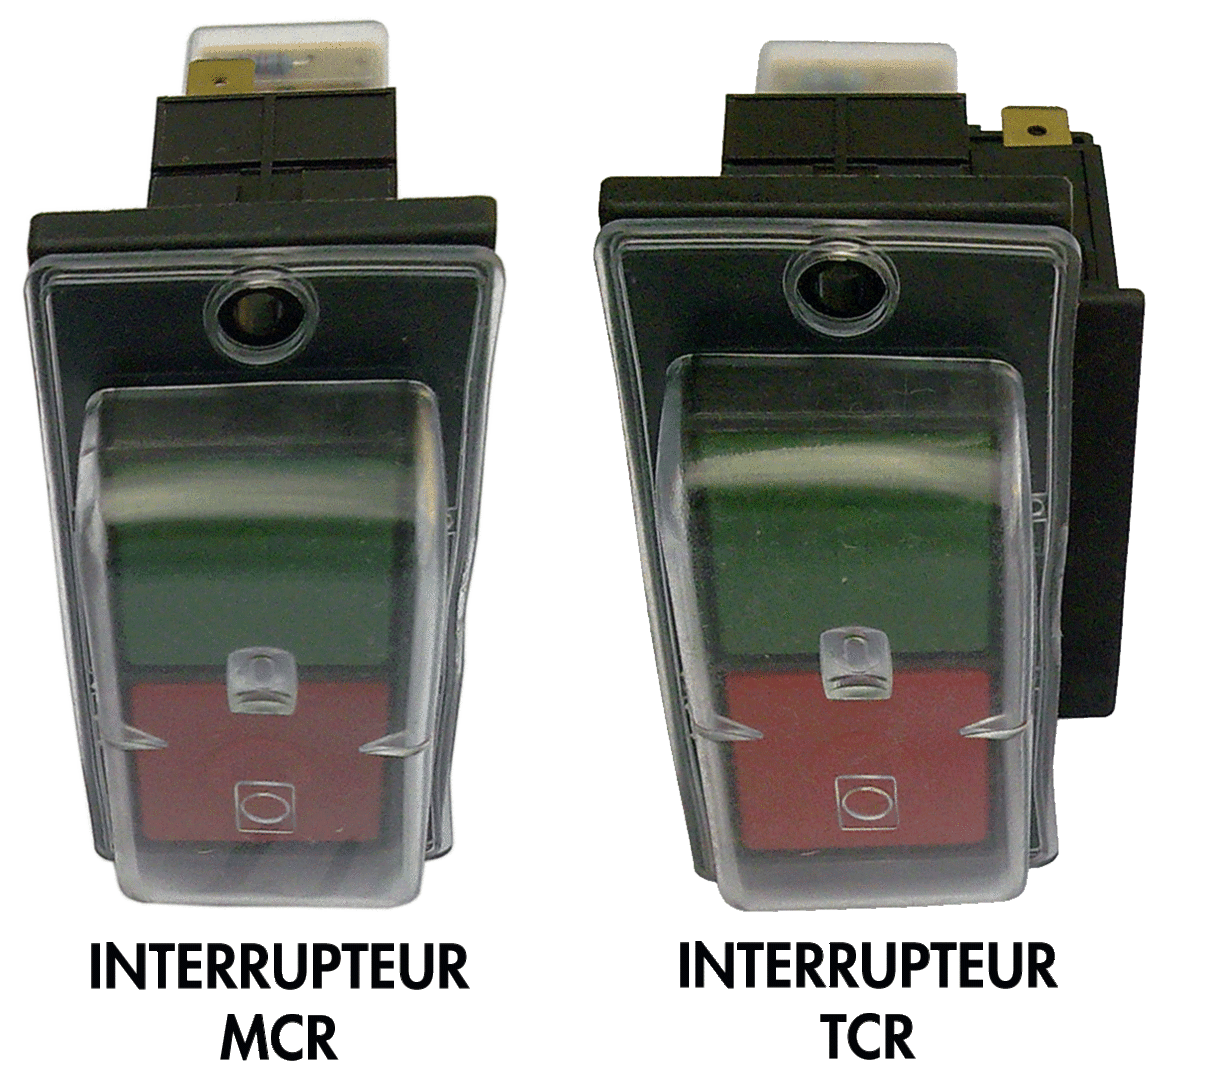 Interrupteur pour convertisseur Monophasé (MCR) ou Triphasé (TCR)